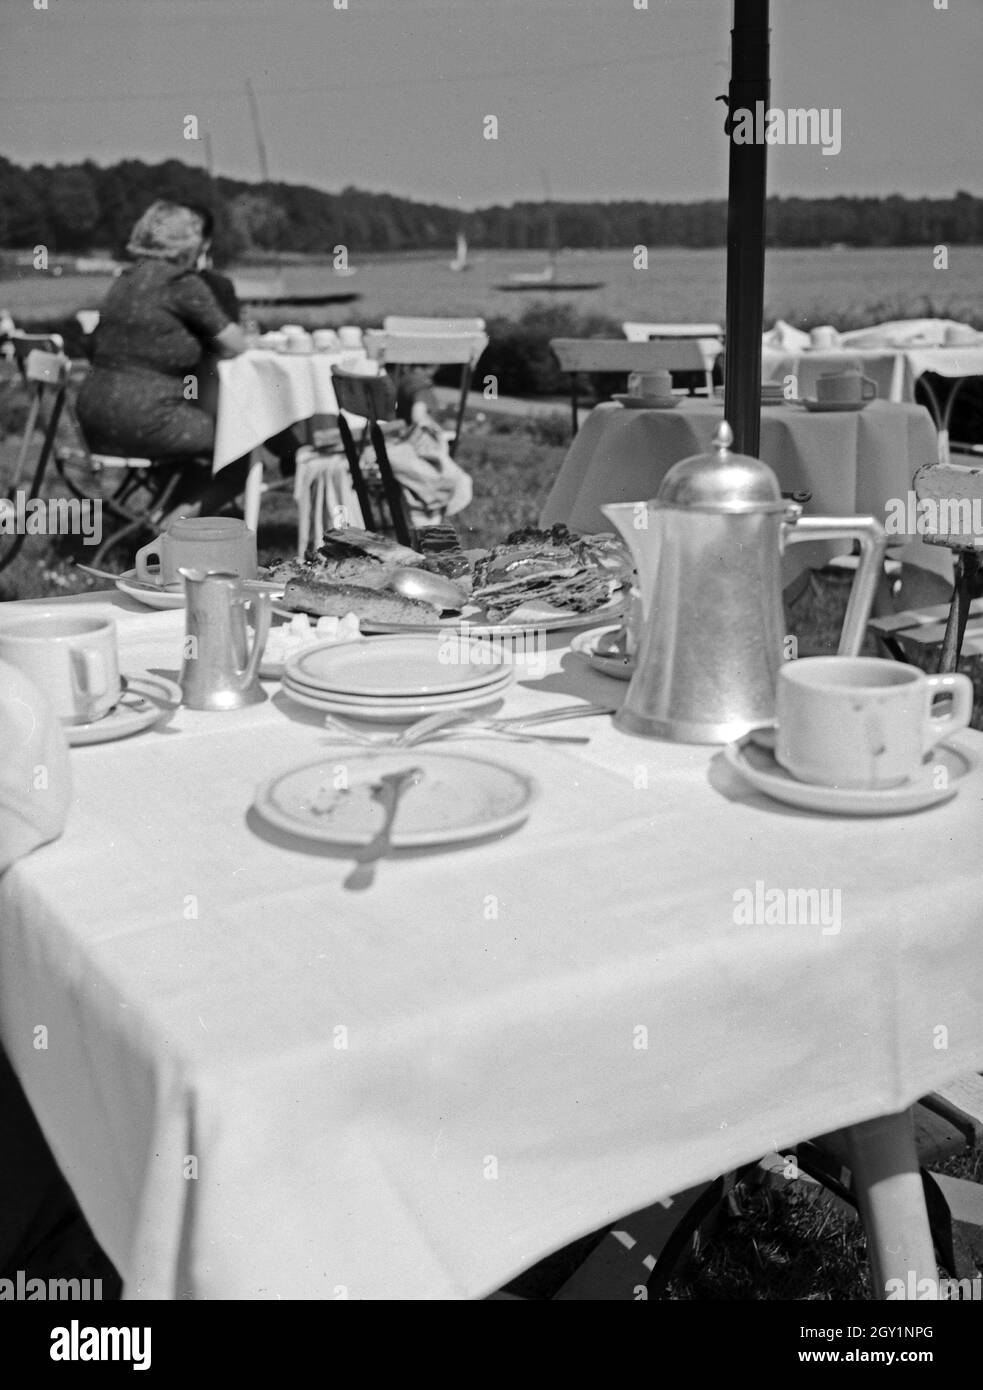 Gedeckte Kaffeetafel in der Außengastronomie, Deutschland 1930er Jahre. Tabella perfetto per un caffè nel pomeriggio, Germania 1930s. Foto Stock